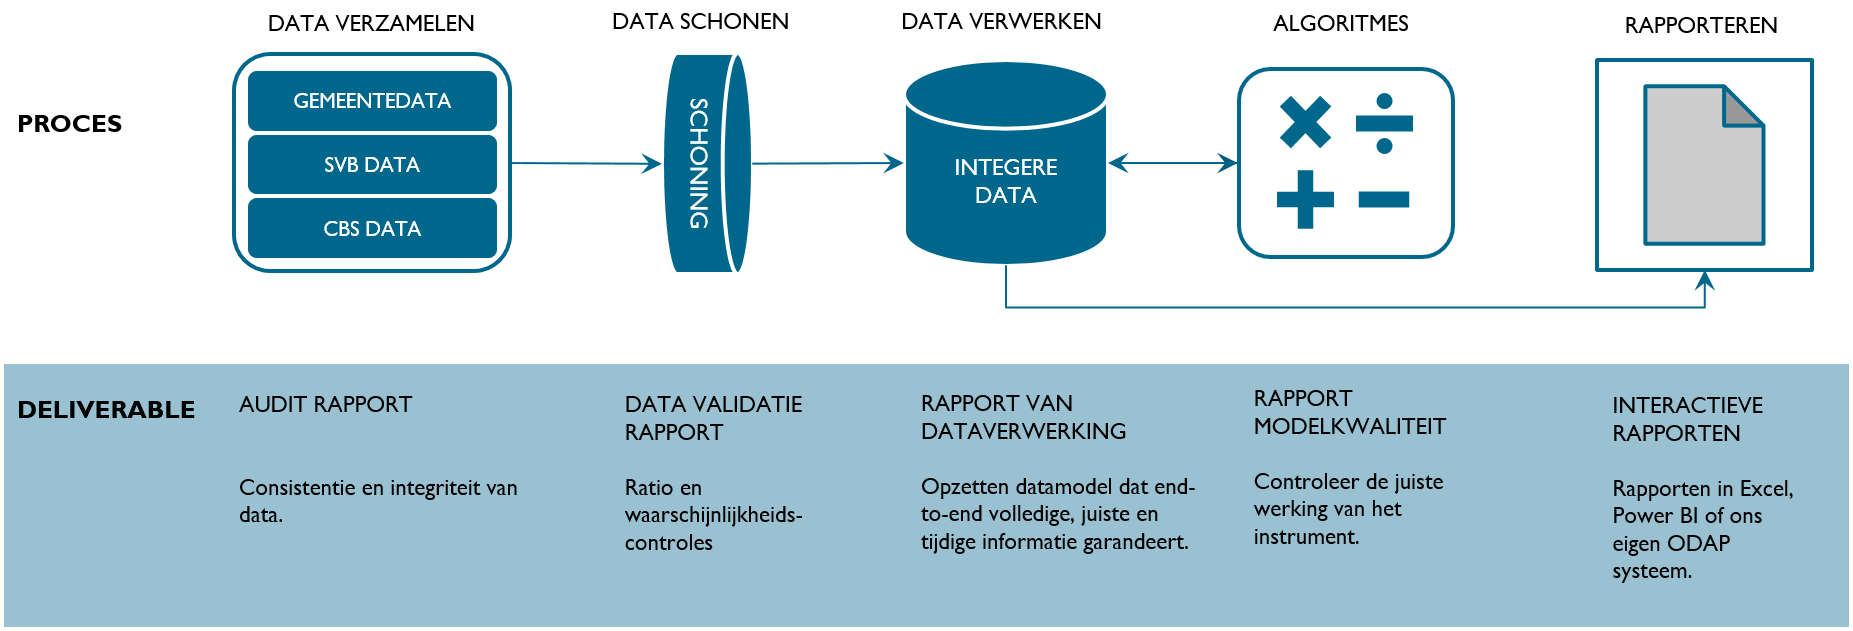 Data & Analytics proces